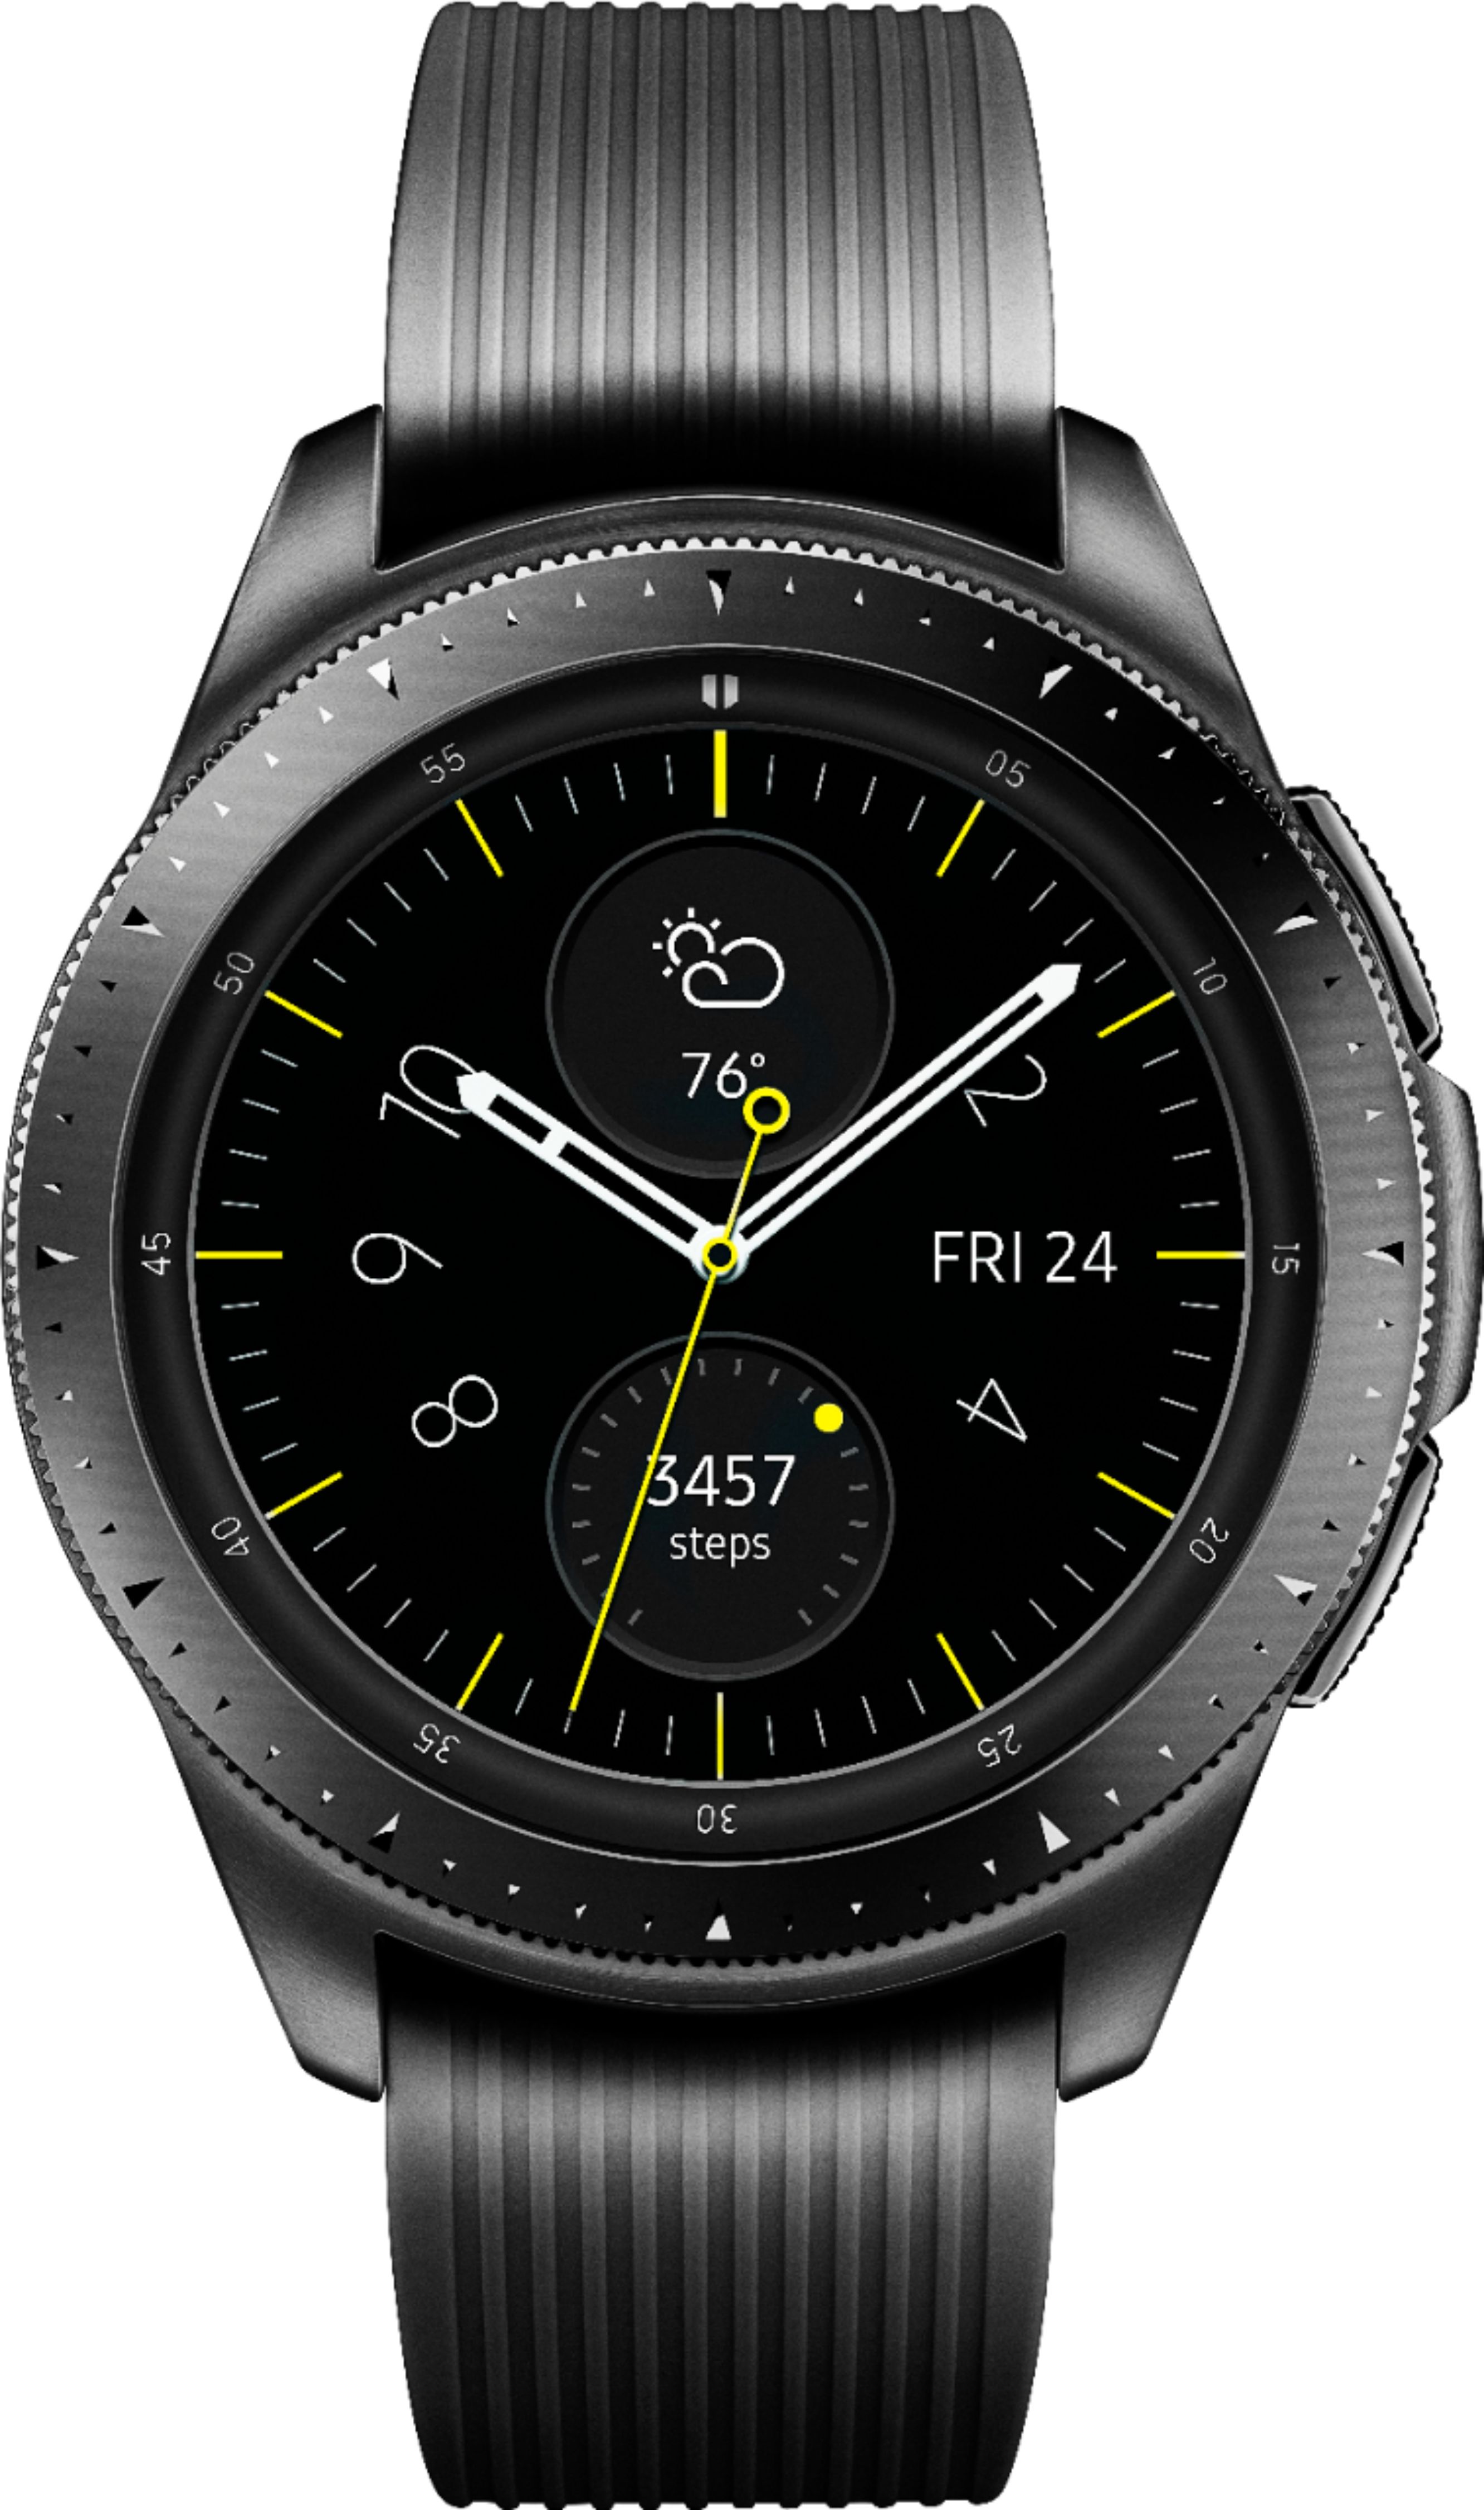 Samsung Galaxy Watch Smartwatch 42mm Stainless Steel Lte Unlocked Midnight Black Sm R815uzkaxar Best Buy